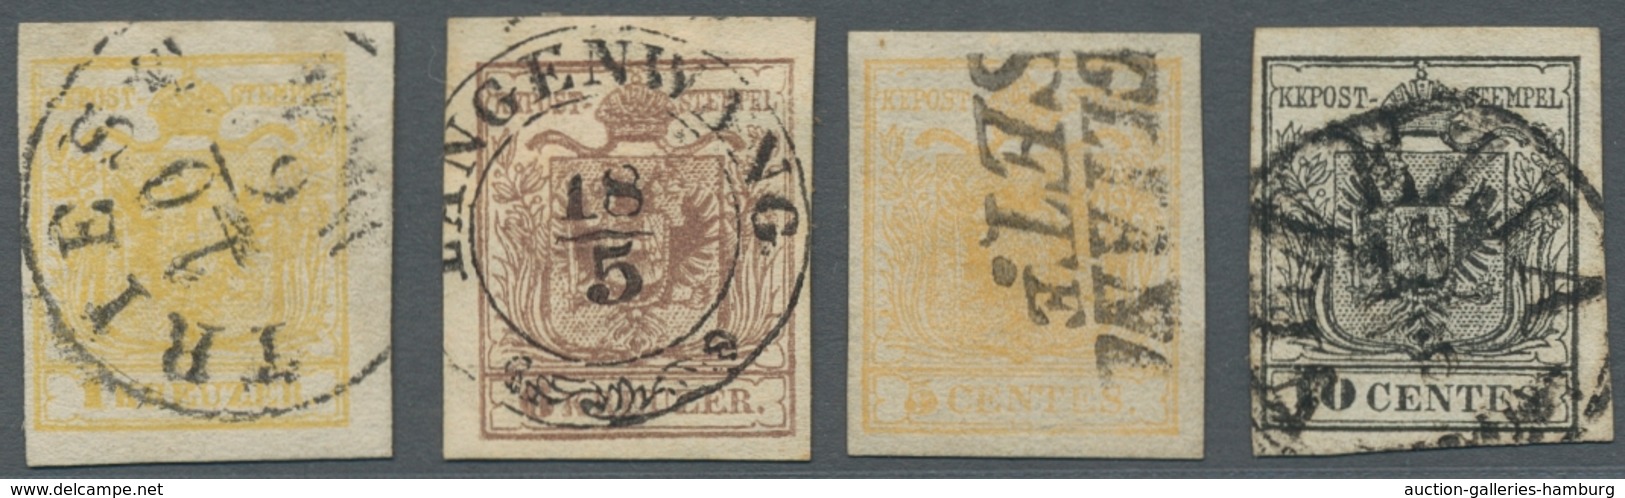 Österreich - Lombardei Und Venetien: 1850, Wappenausgabe 5 Und 10 Centes, Dazu Österreich Nr. 1 Mit - Lombardo-Vénétie